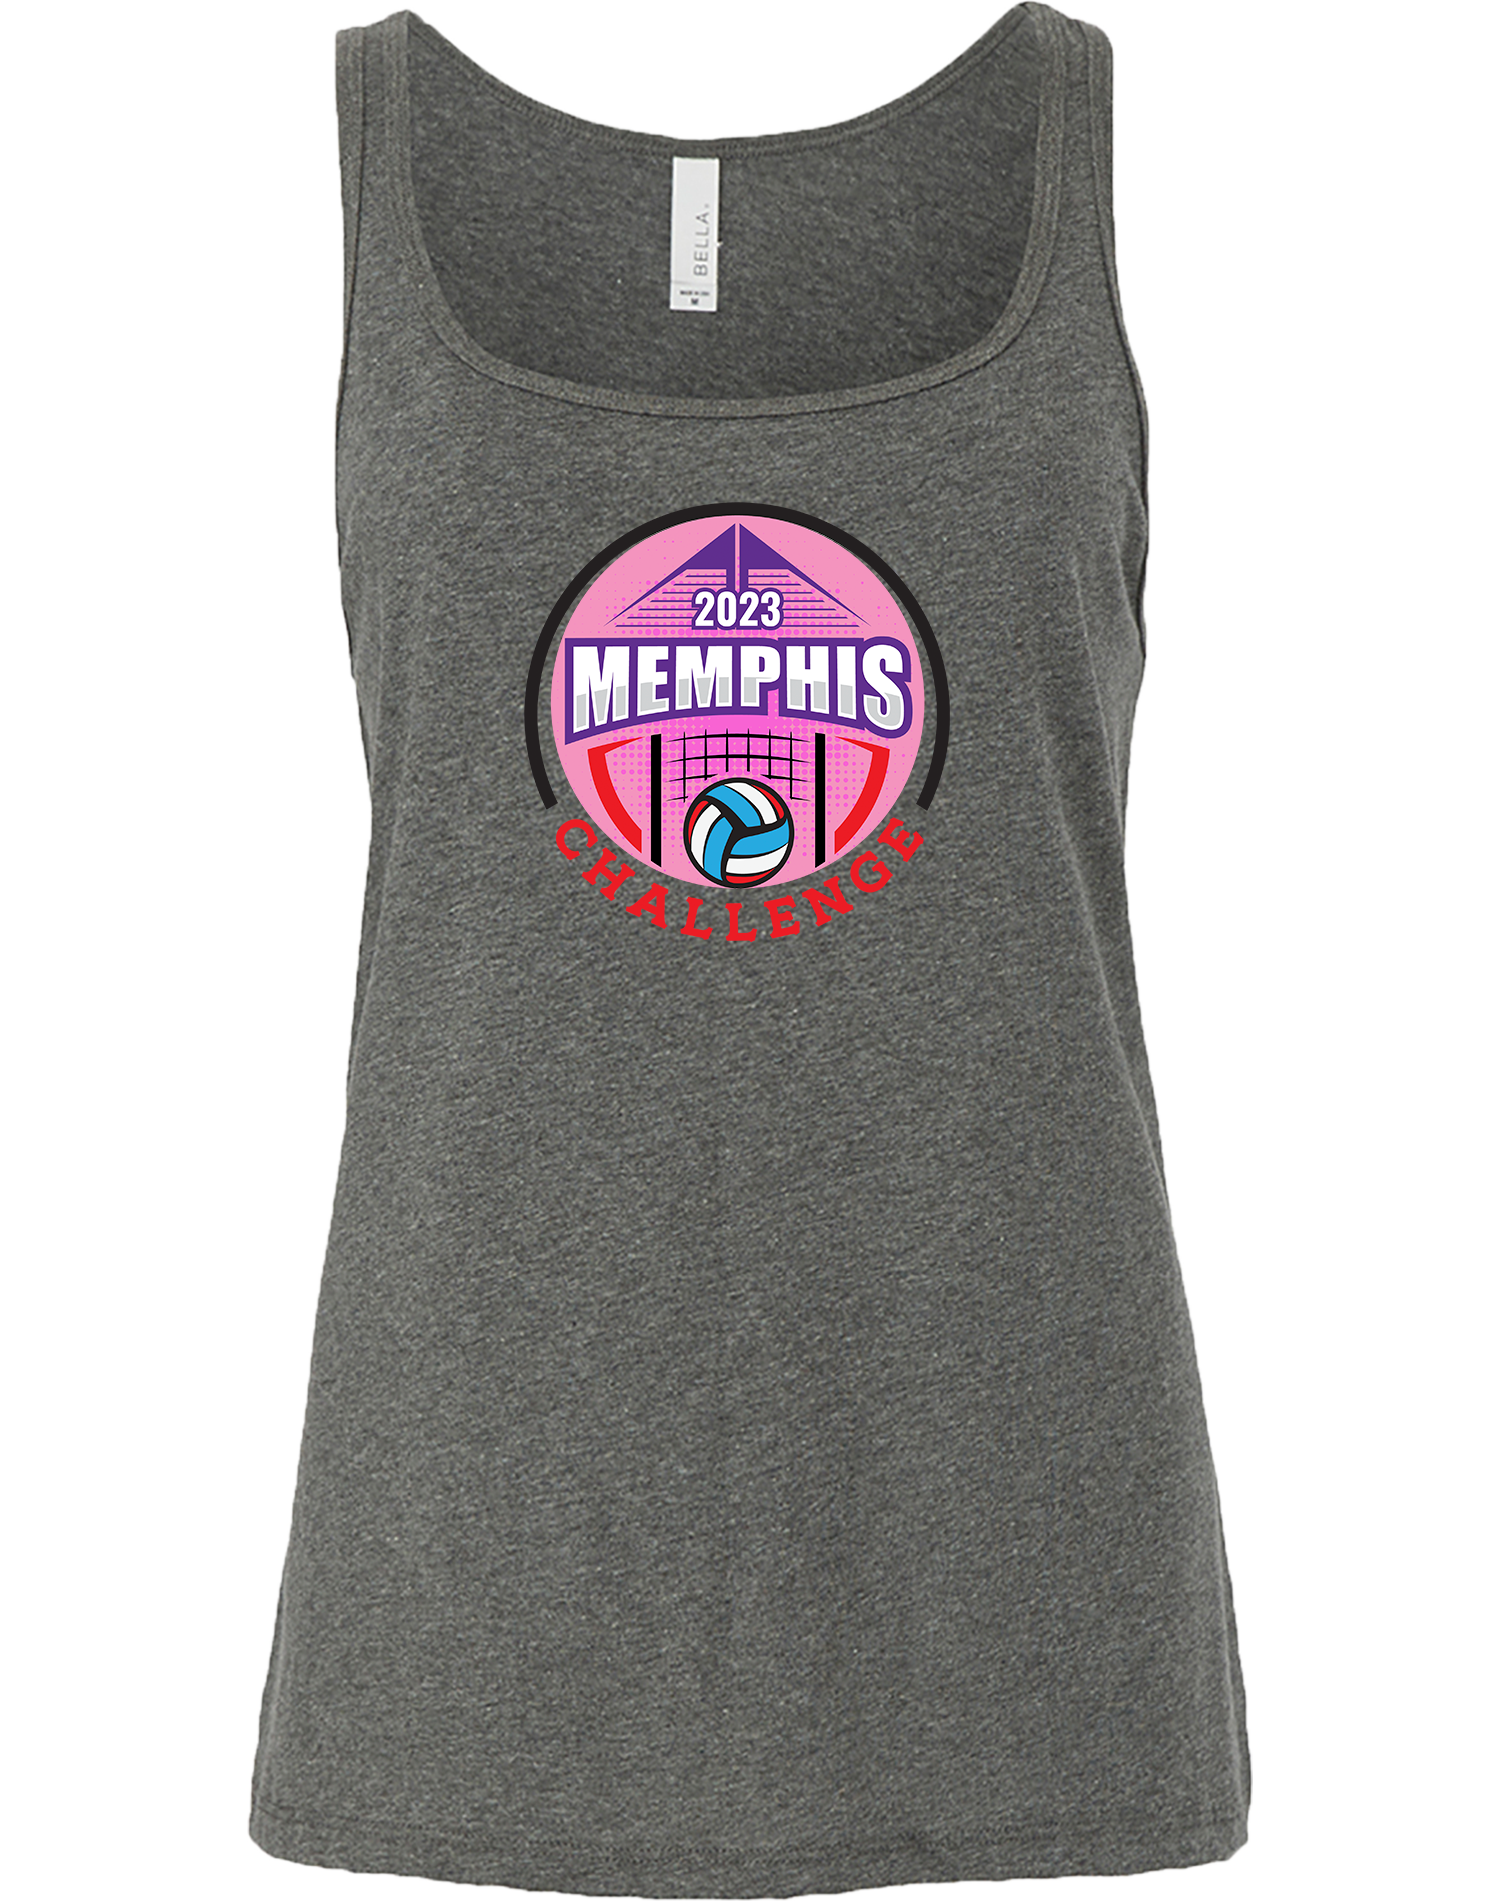 TANK TOP - 2023 Memphis Challenge